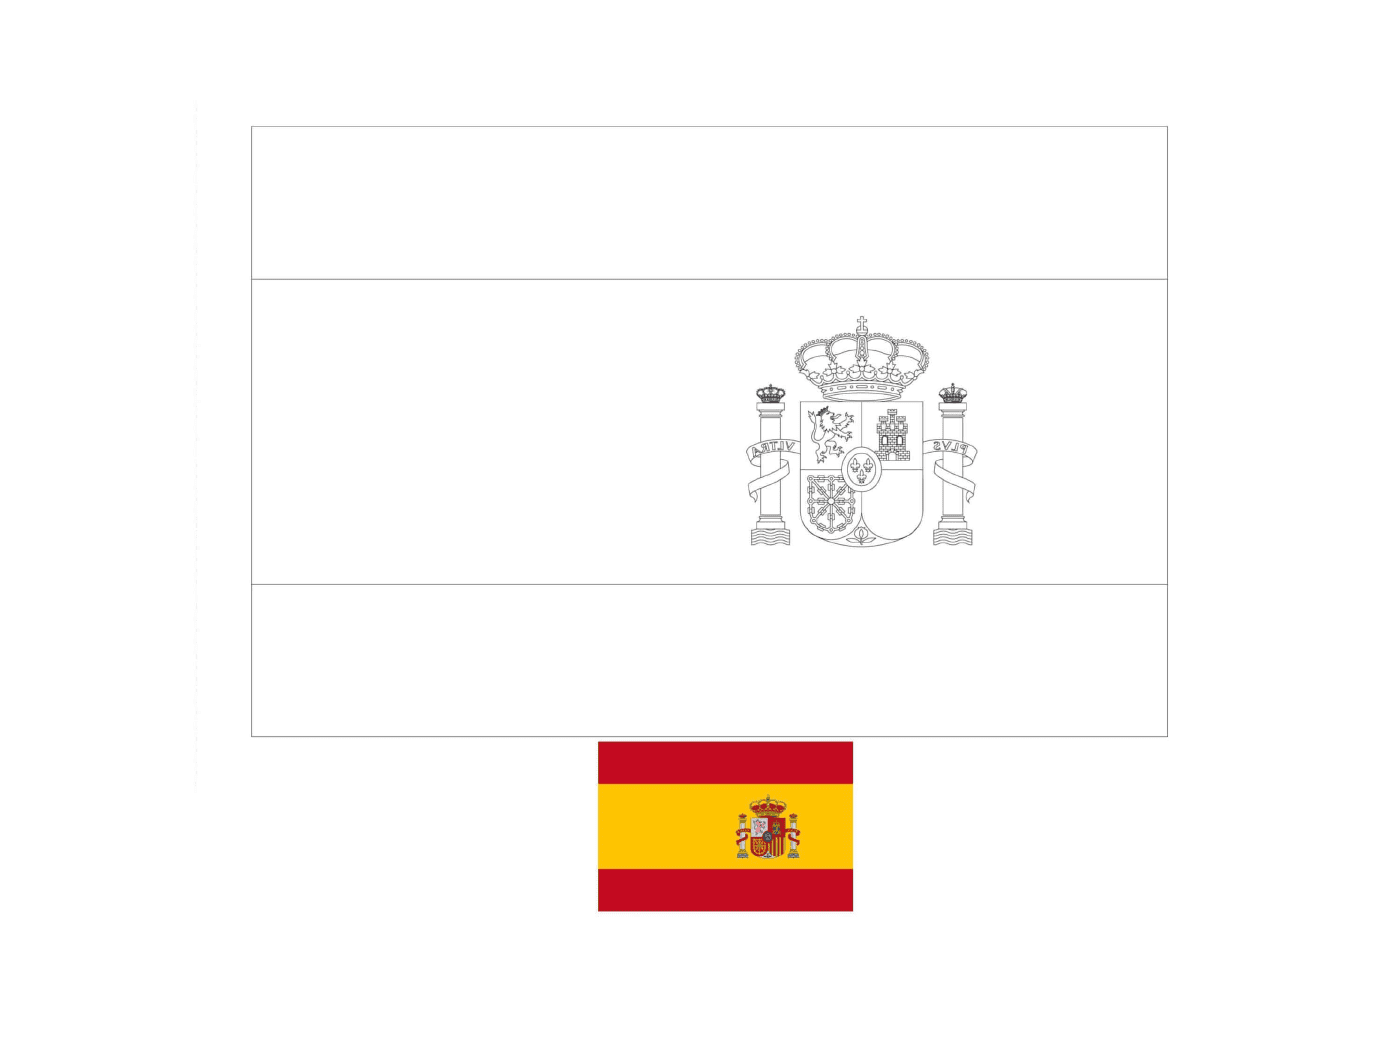  Flagge von Spanien gezeichnet mit Farben 